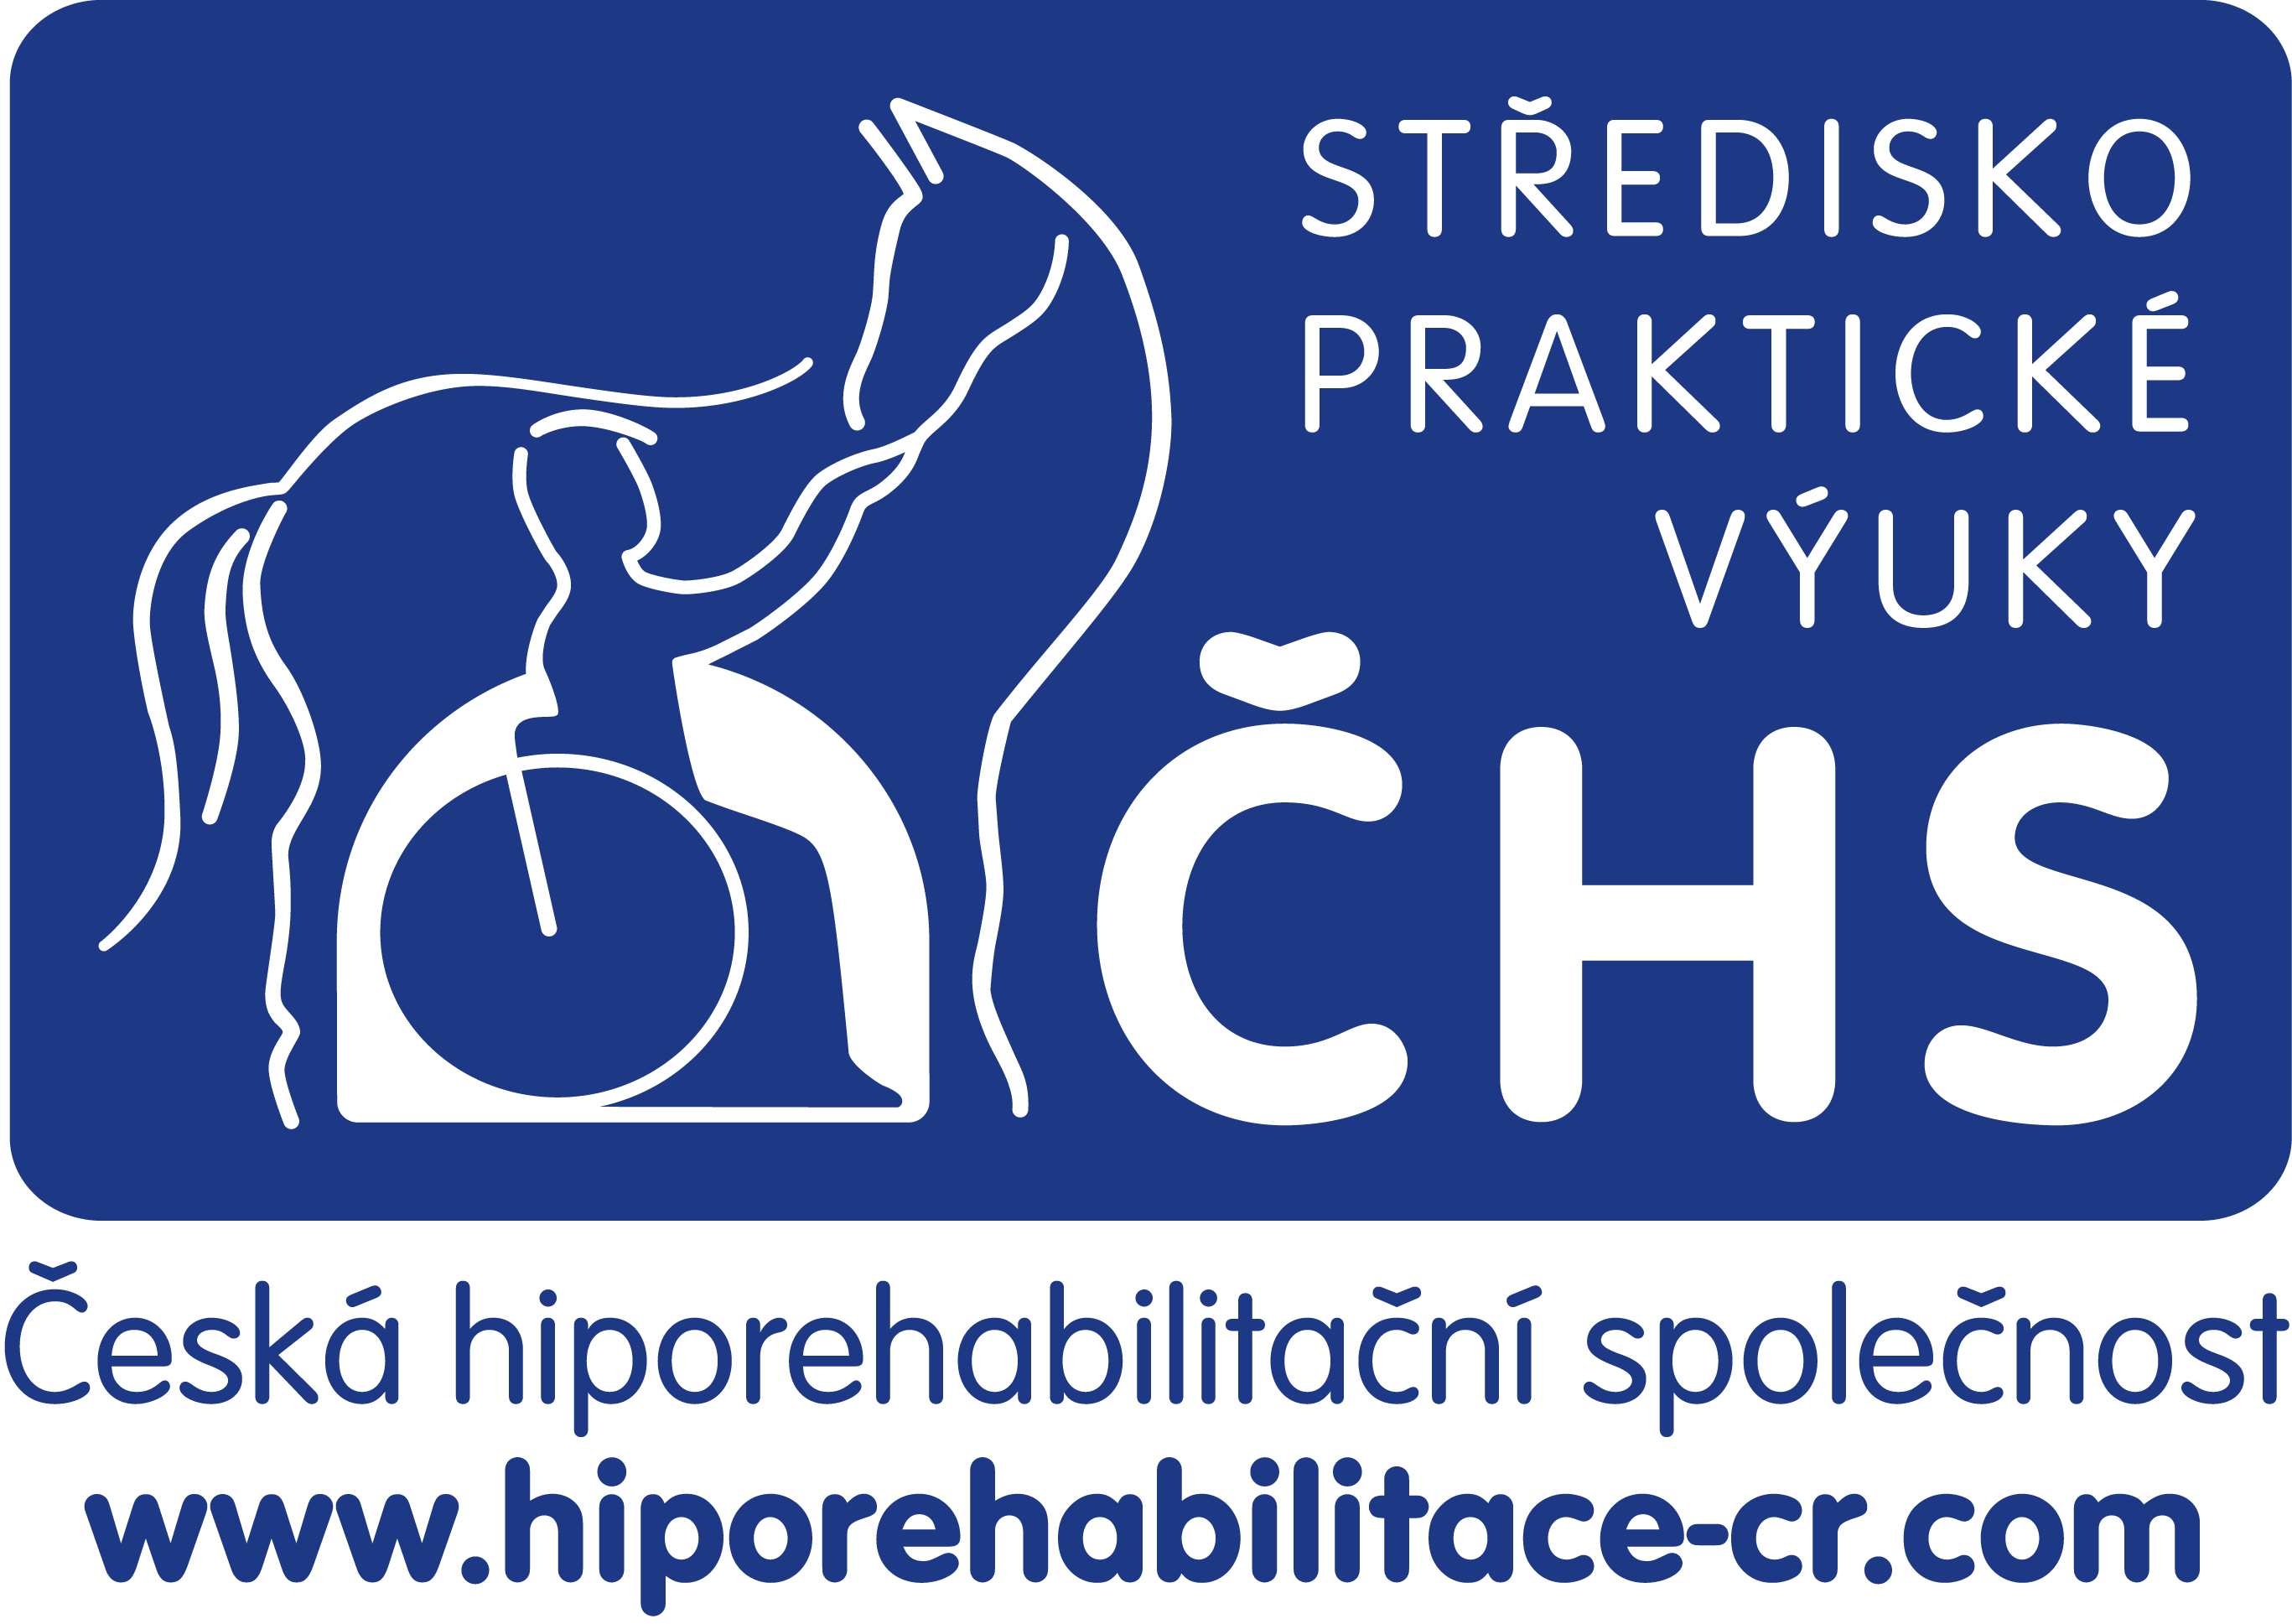 Česká hiporehabilitační společnost